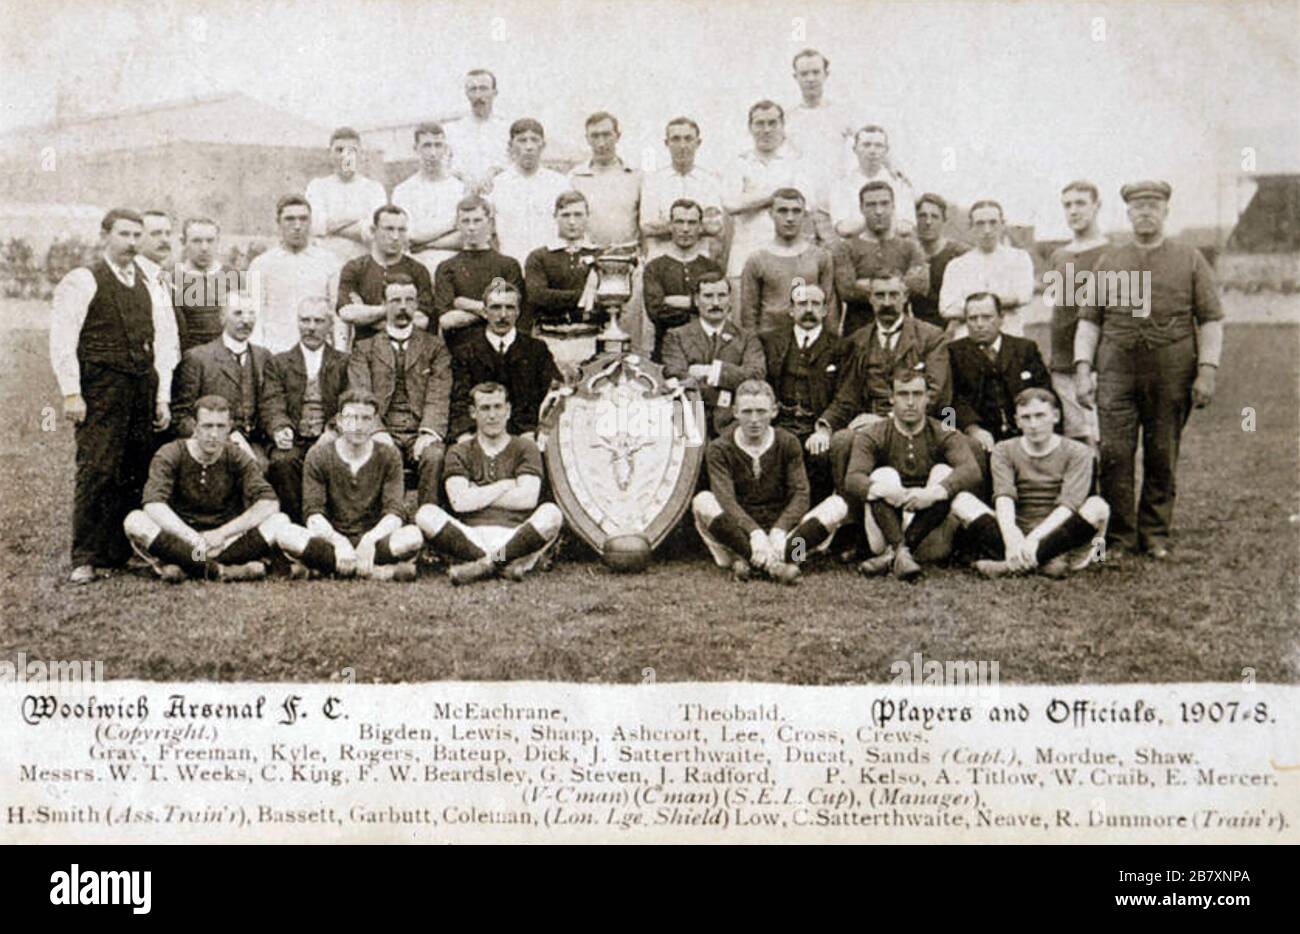 WOOLWICH ARSENAL SQUADRA DI CALCIO 1908 in posa con uno scudo, probabilmente il trofeo London Professional Footballers Association Charity Fund Match. Foto Stock